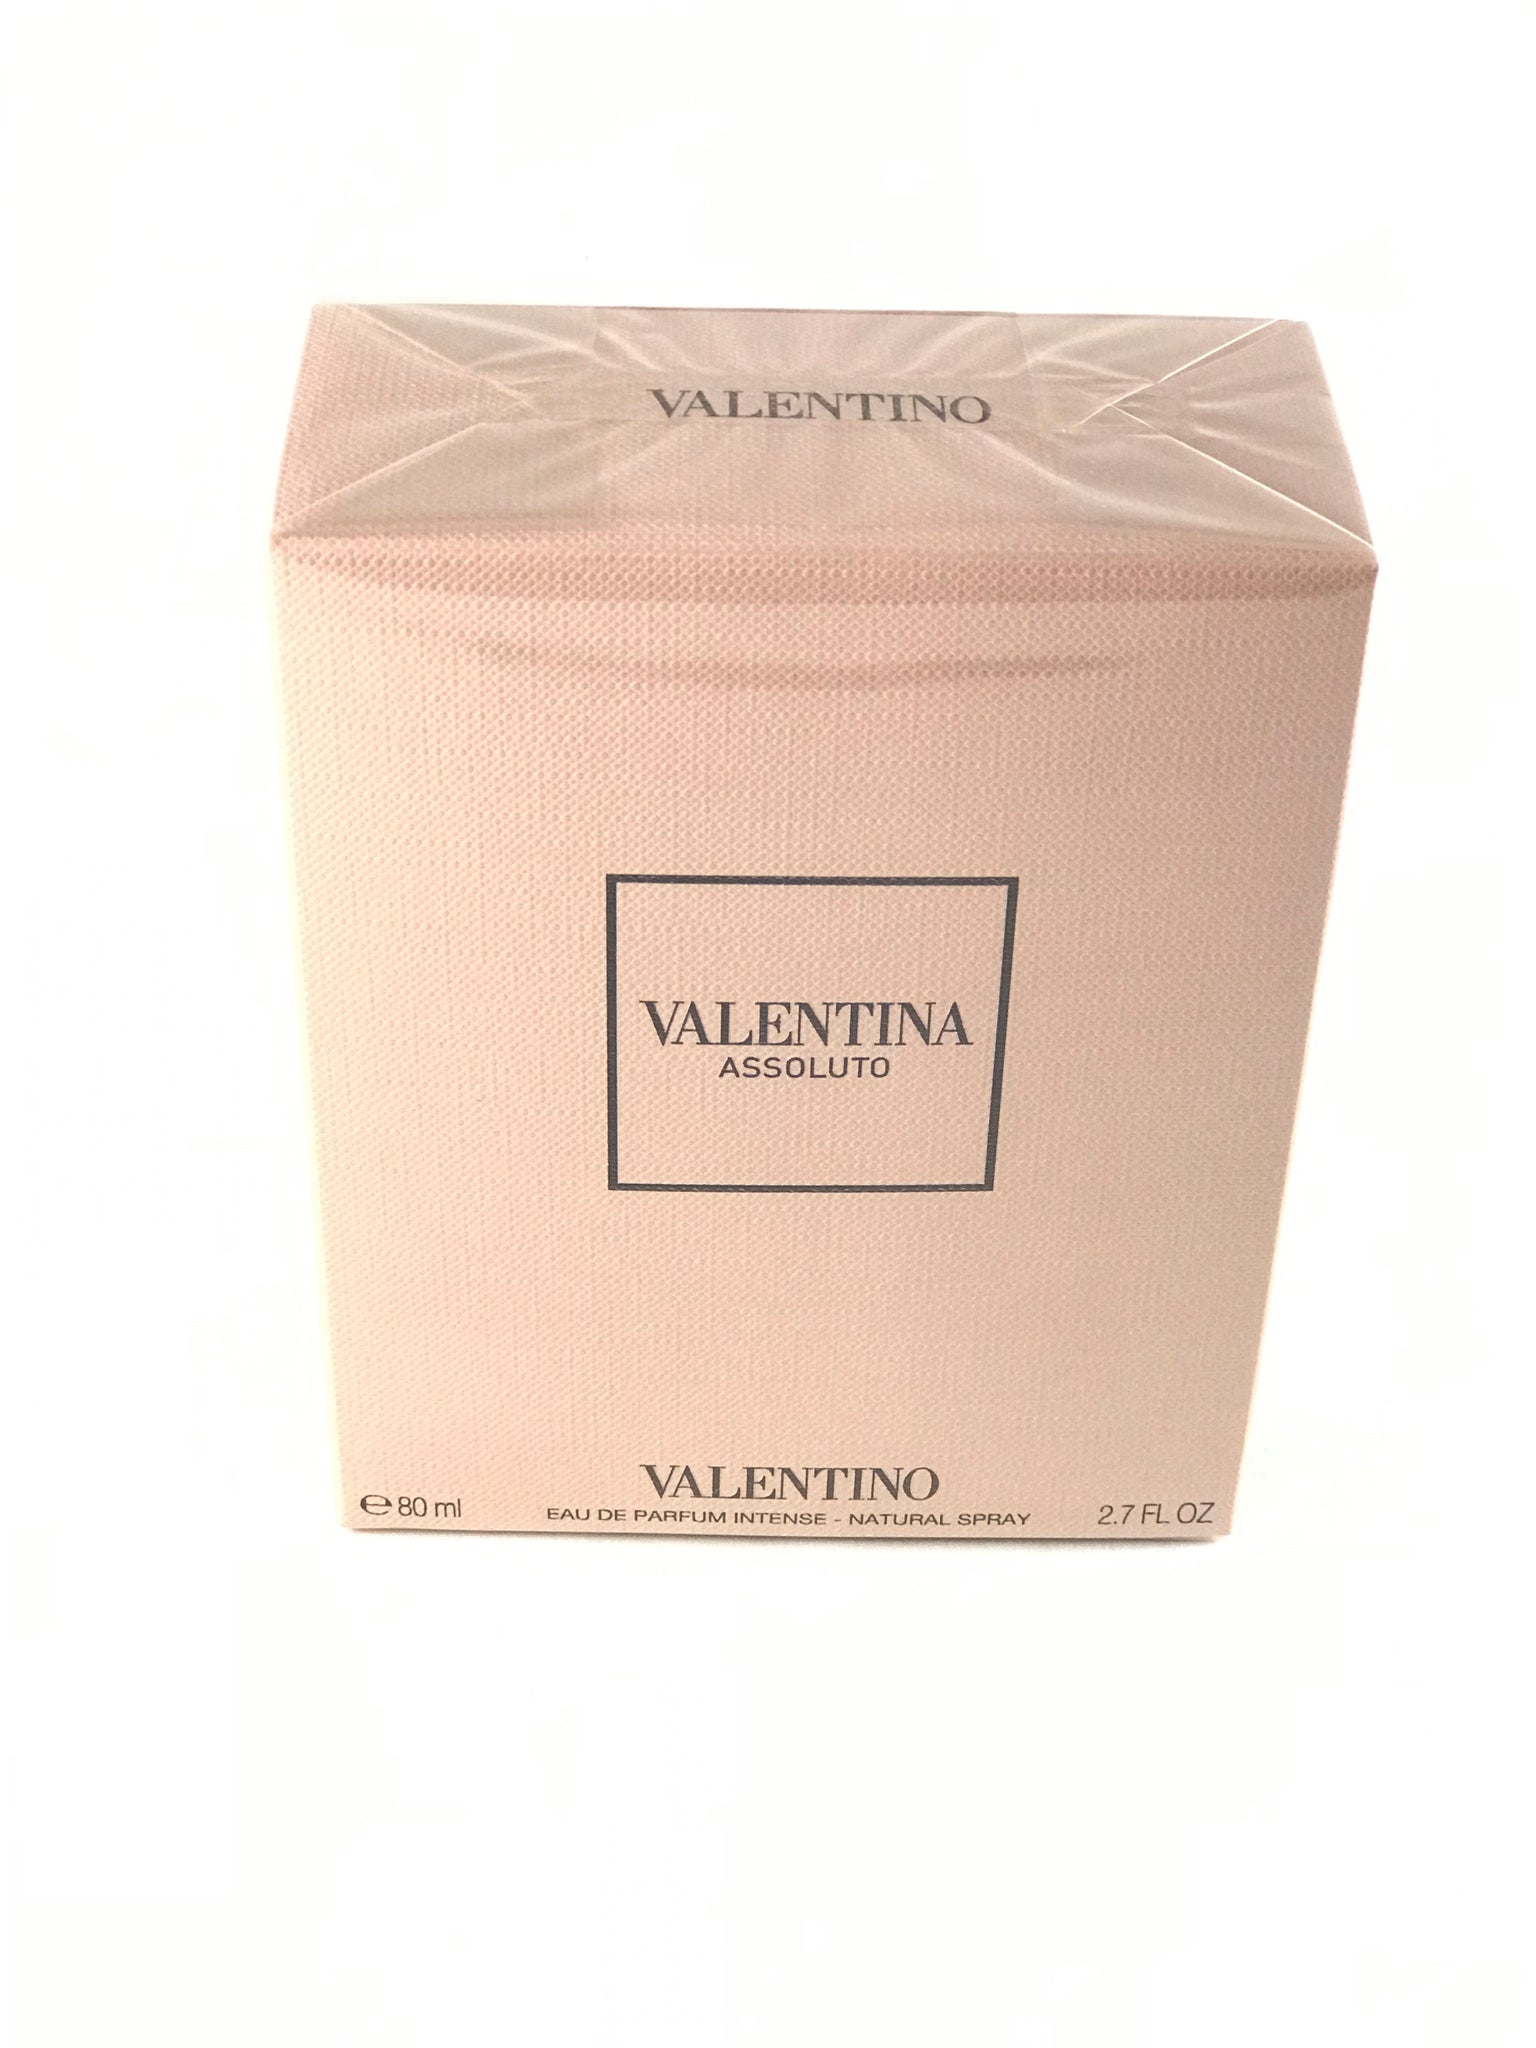 Valentina Assoluto by Valentino Eau de Parfum Spray Intense 2.7 oz (women)